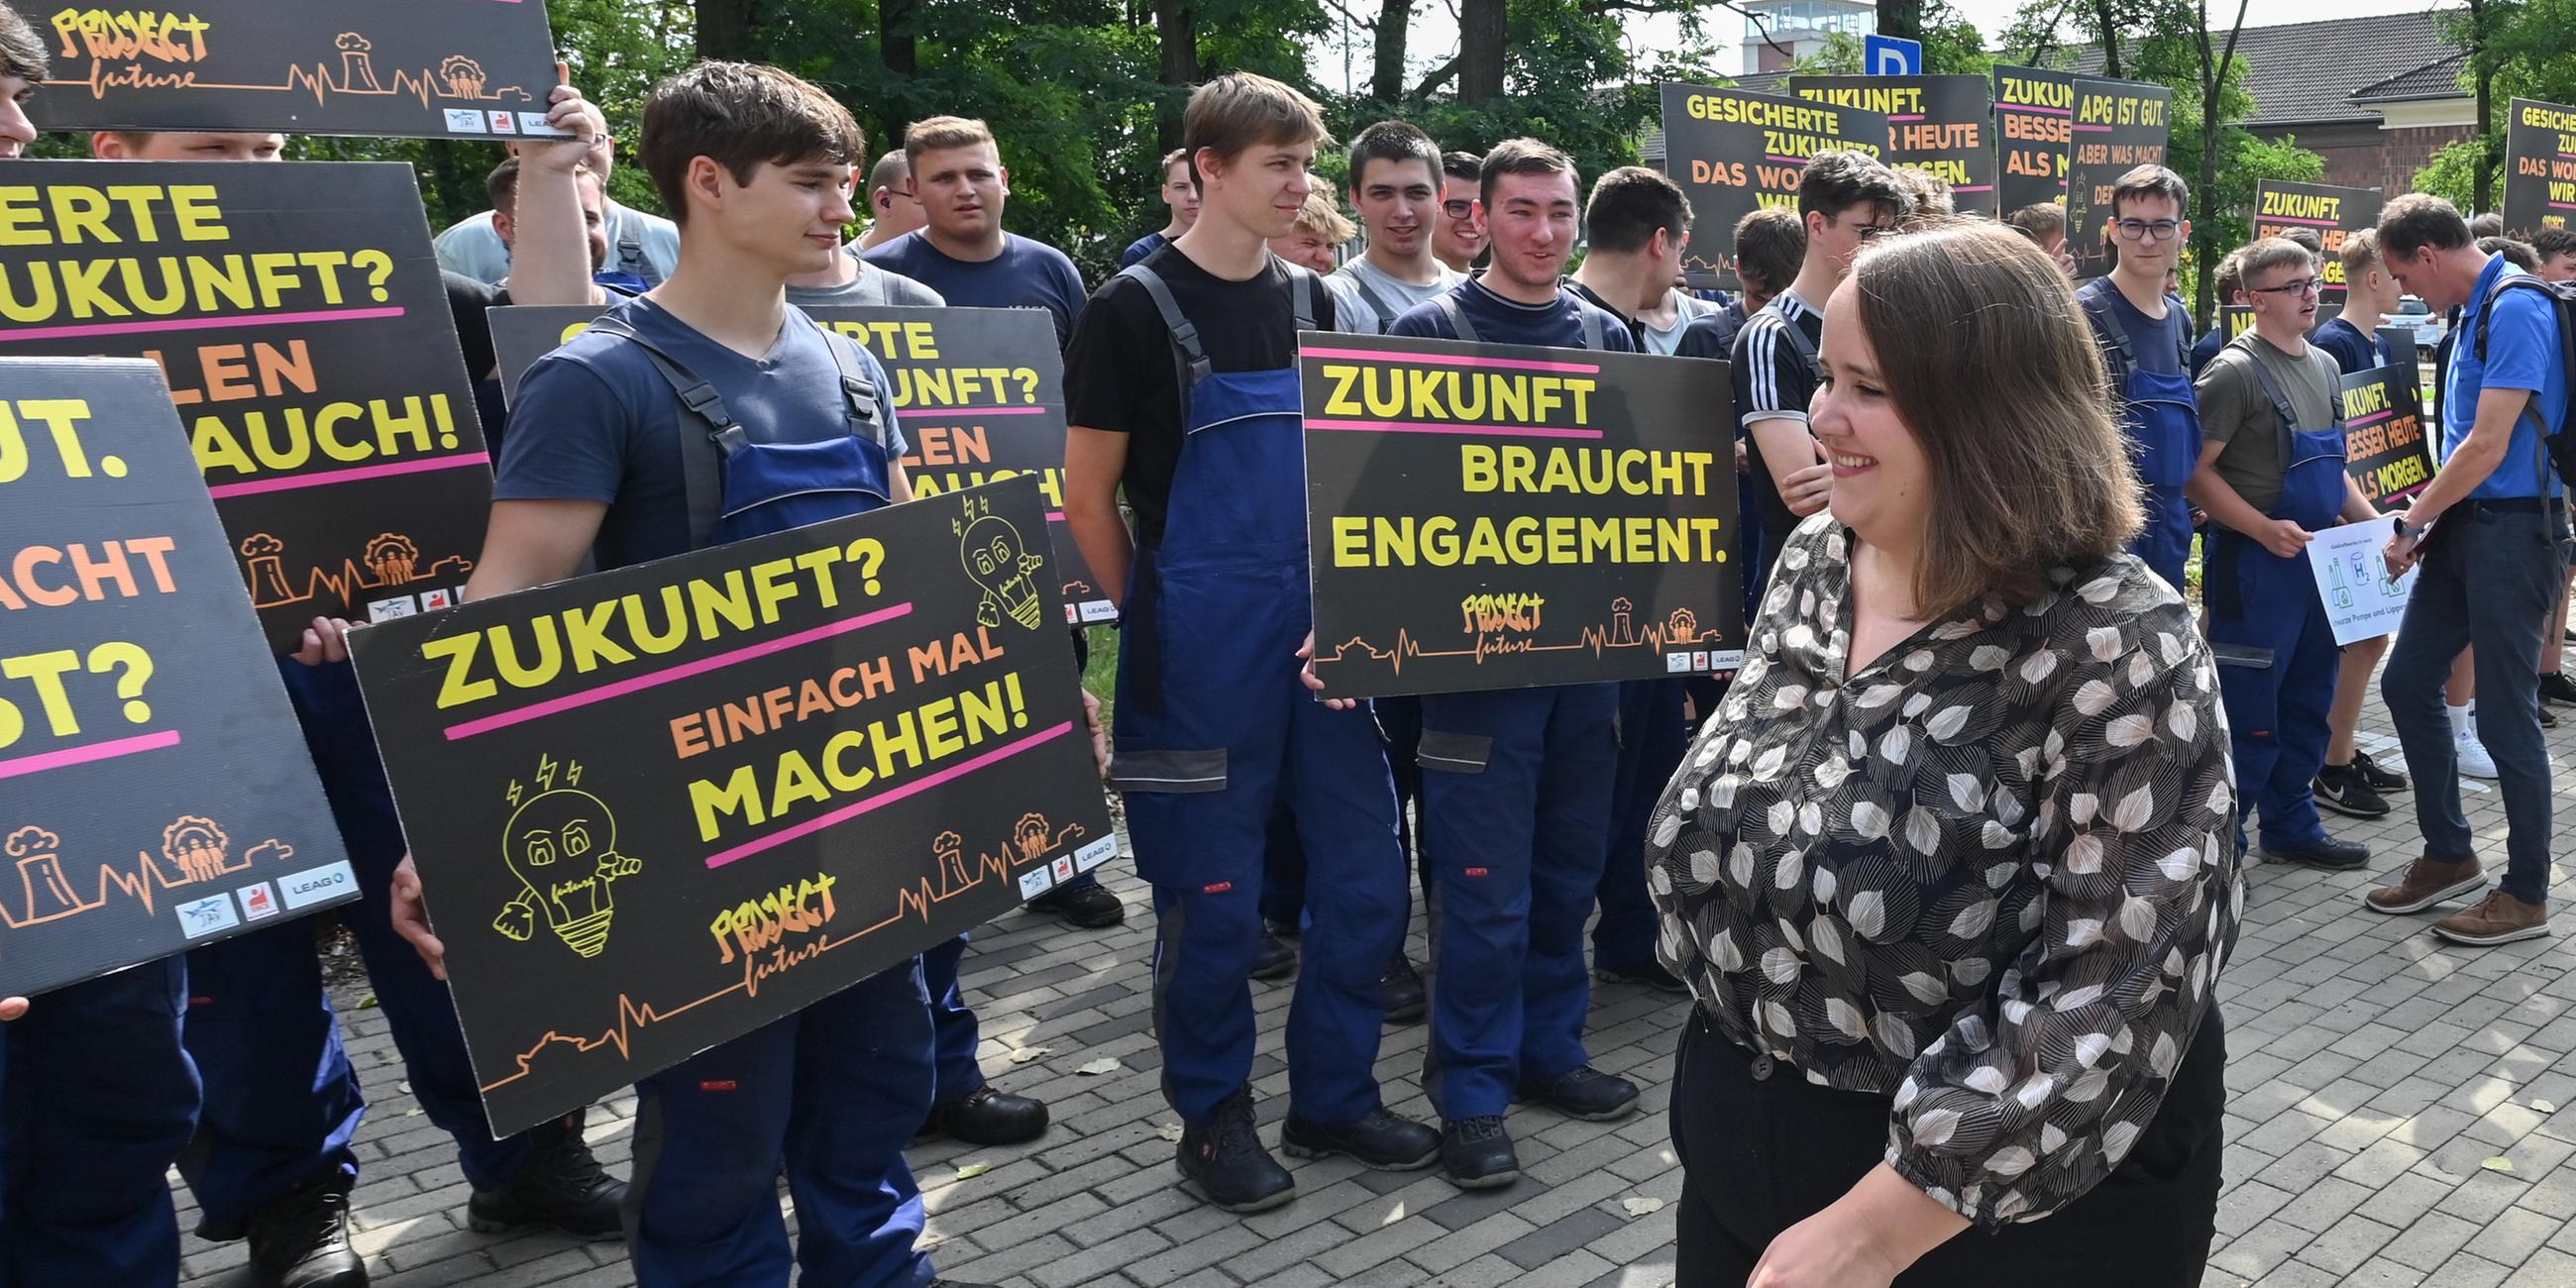 21.08.23, Cottbus: Ricarda Lang wird von einer Gruppe protestierender Lehrlinge begrüßt, die Plakate hochhalten.